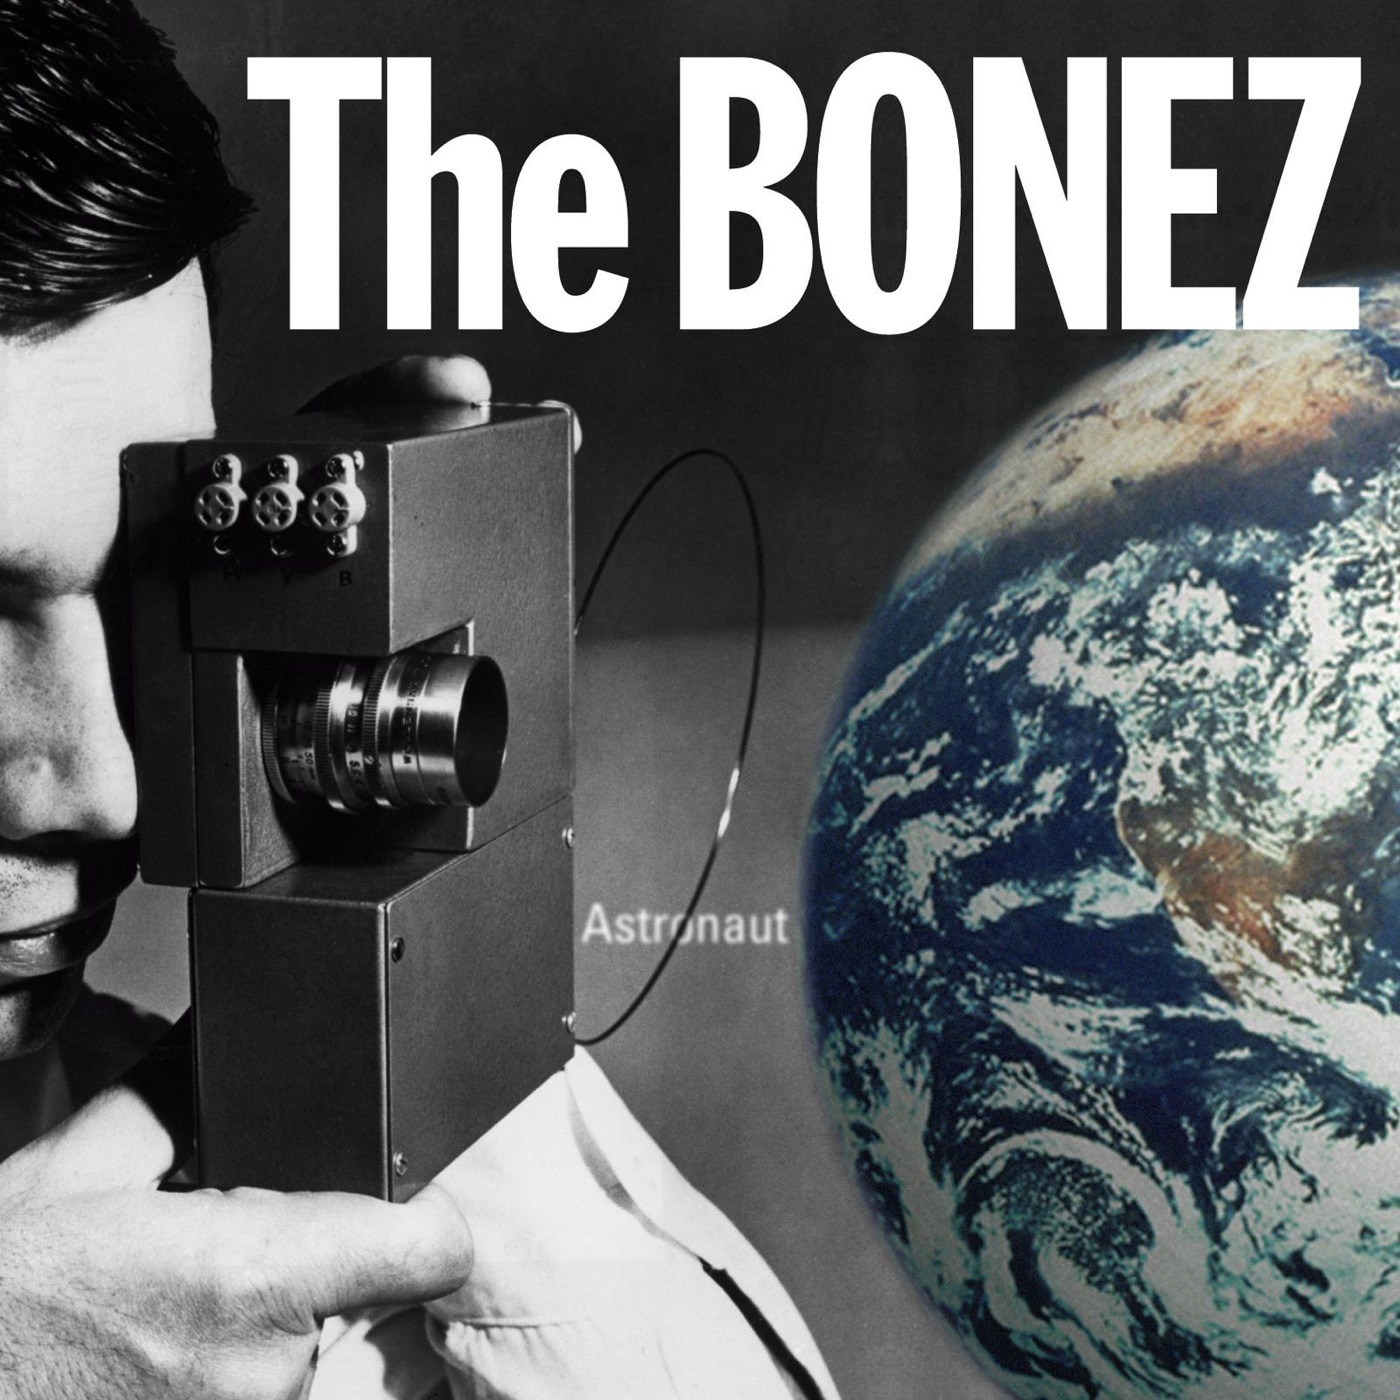 Astronaut by The BONEZ